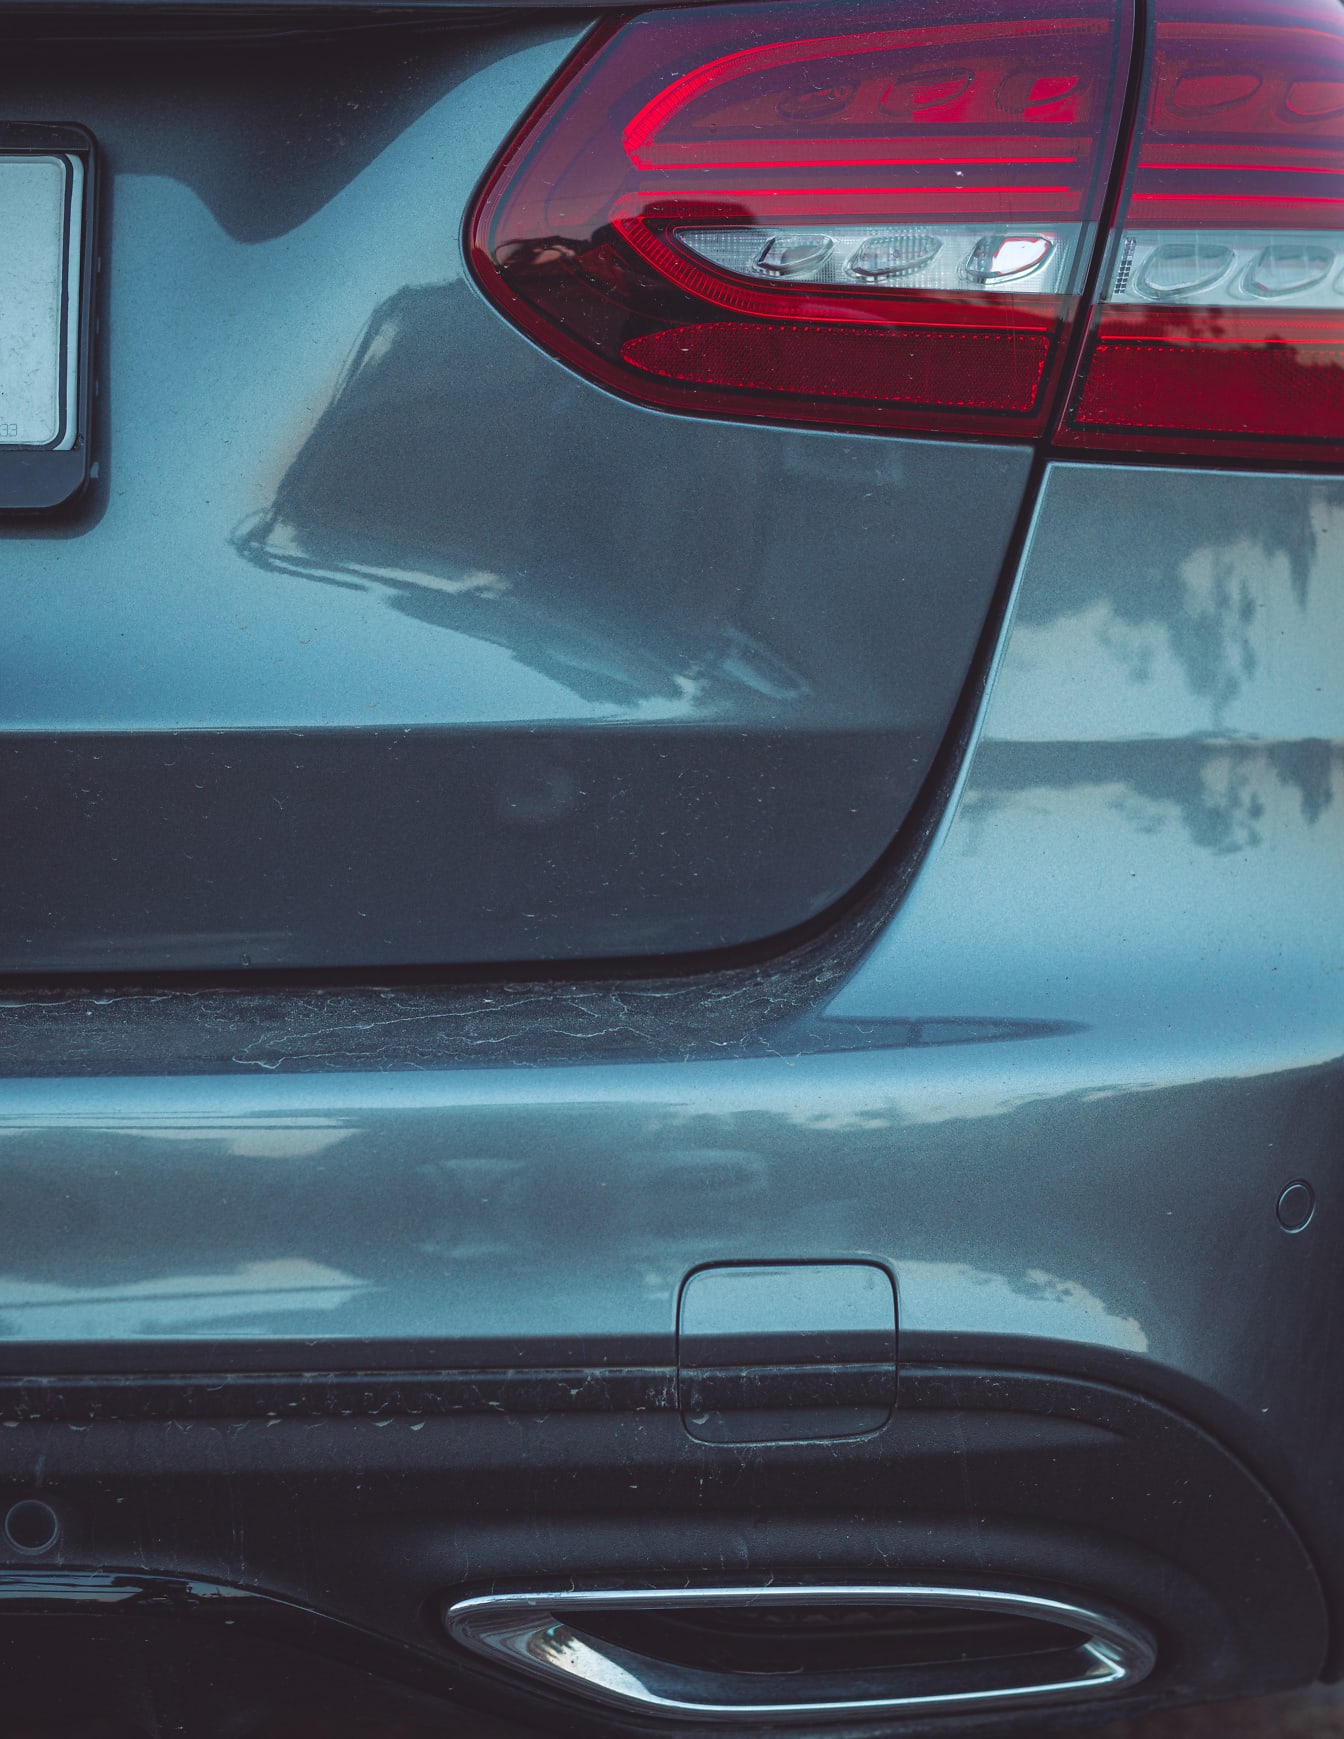 메탈릭 그레이 컬러의 차량 뒷모습과 후미등에 초점이 맞춰진 모습